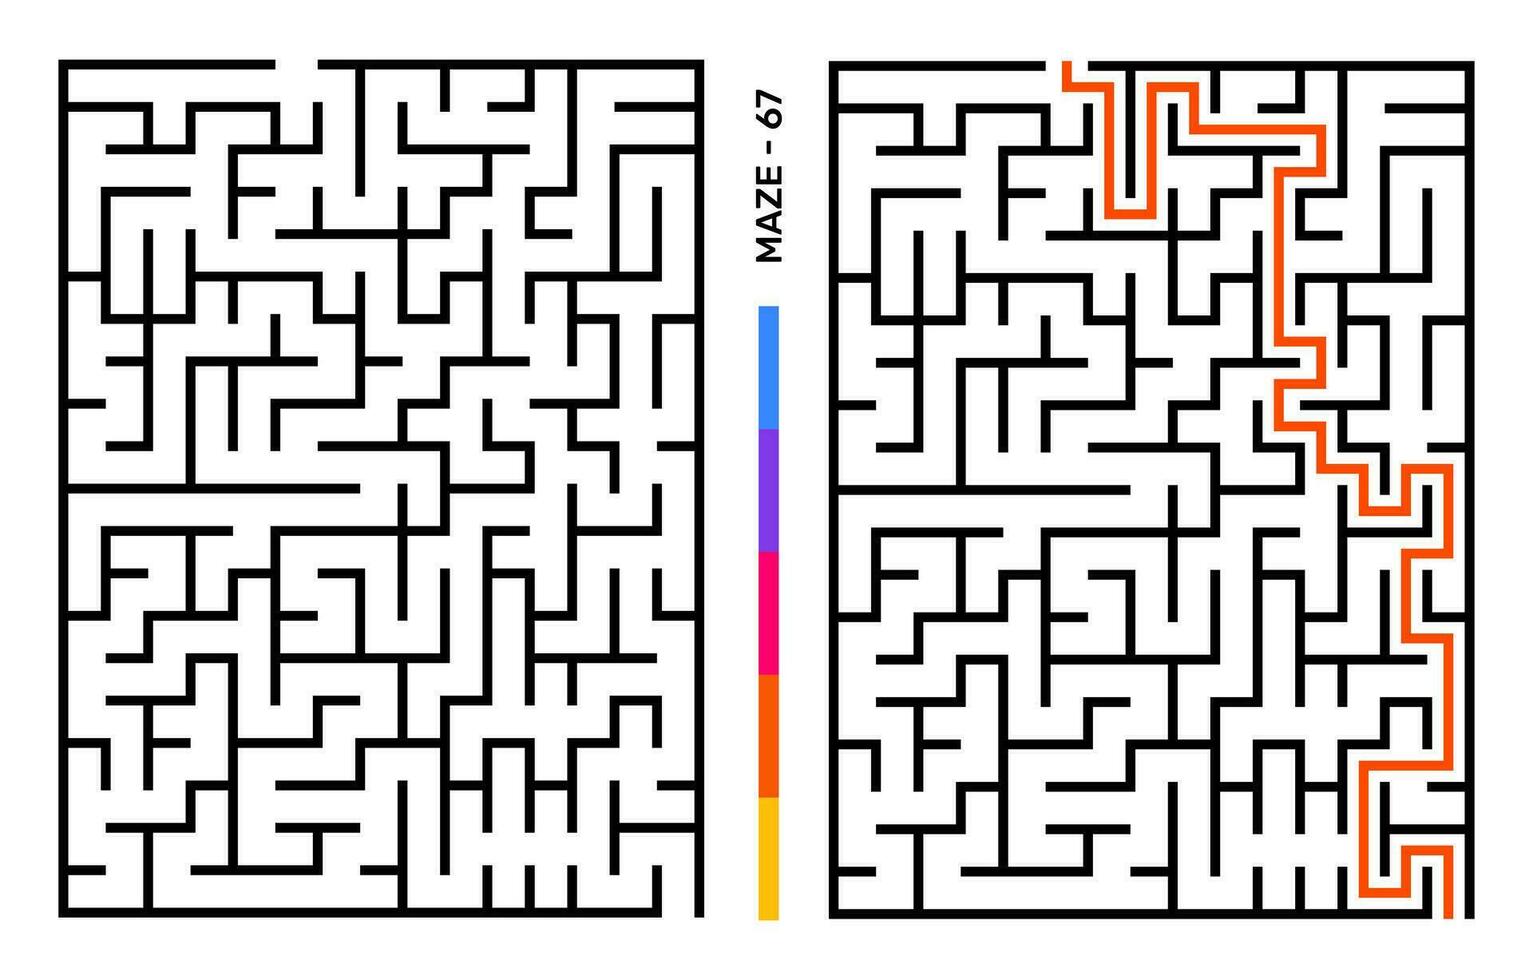 abstract doolhof puzzel labyrint met binnenkomst en Uitgang. doolhof voor werkzaamheid boek. probleemoplossing puzzels spellen voor werkboek. vector illustratie - eps 10